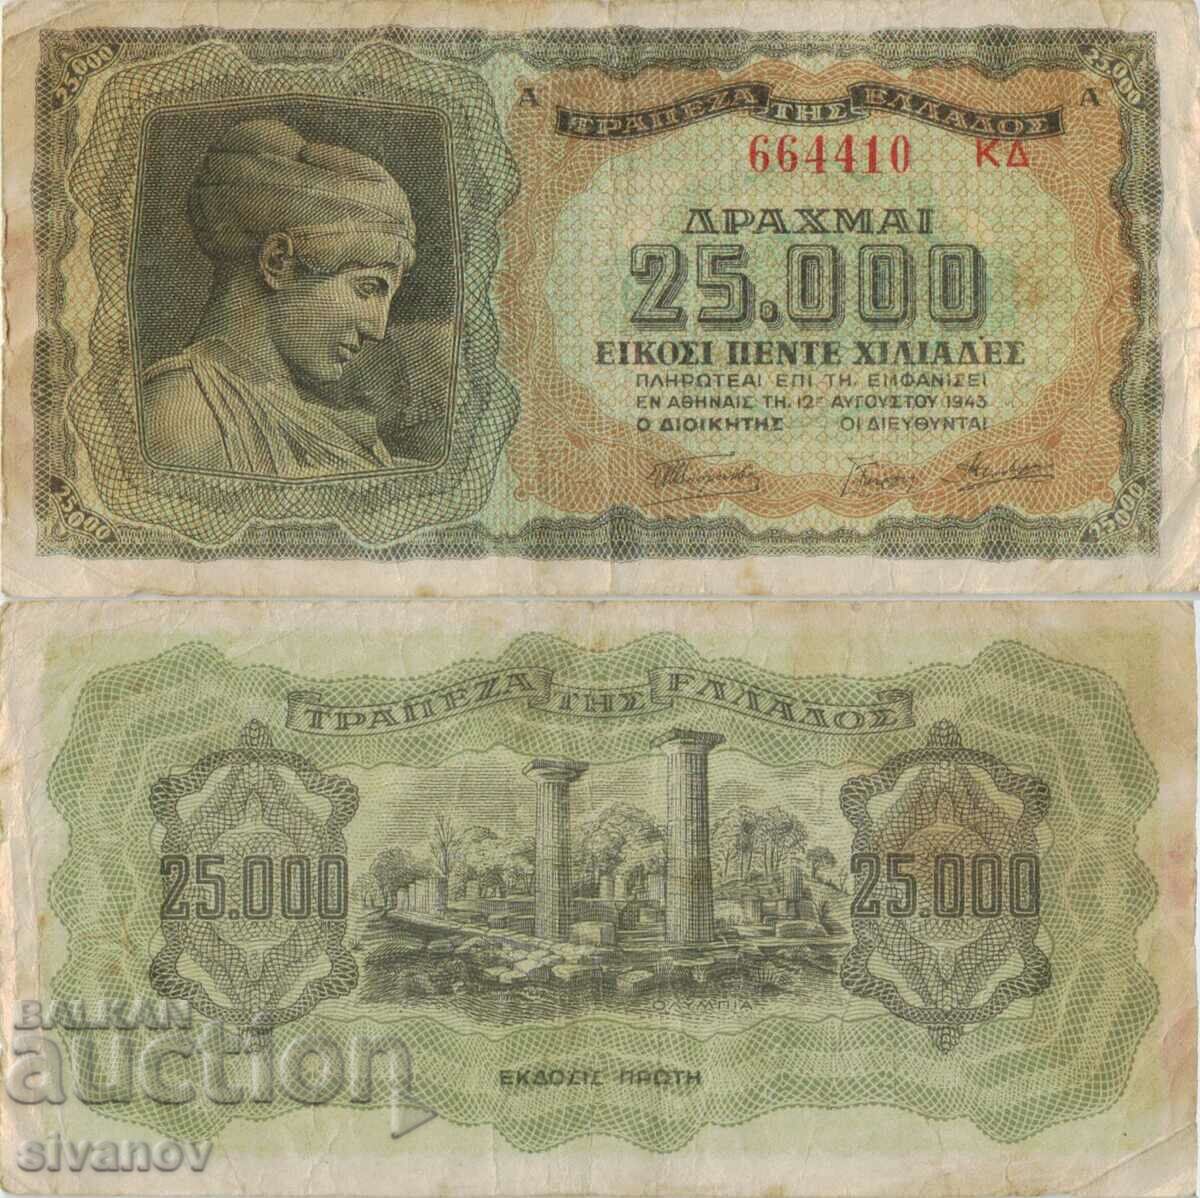 Гърция 25000 драхми 1943 година банкнота букви отзад #5101